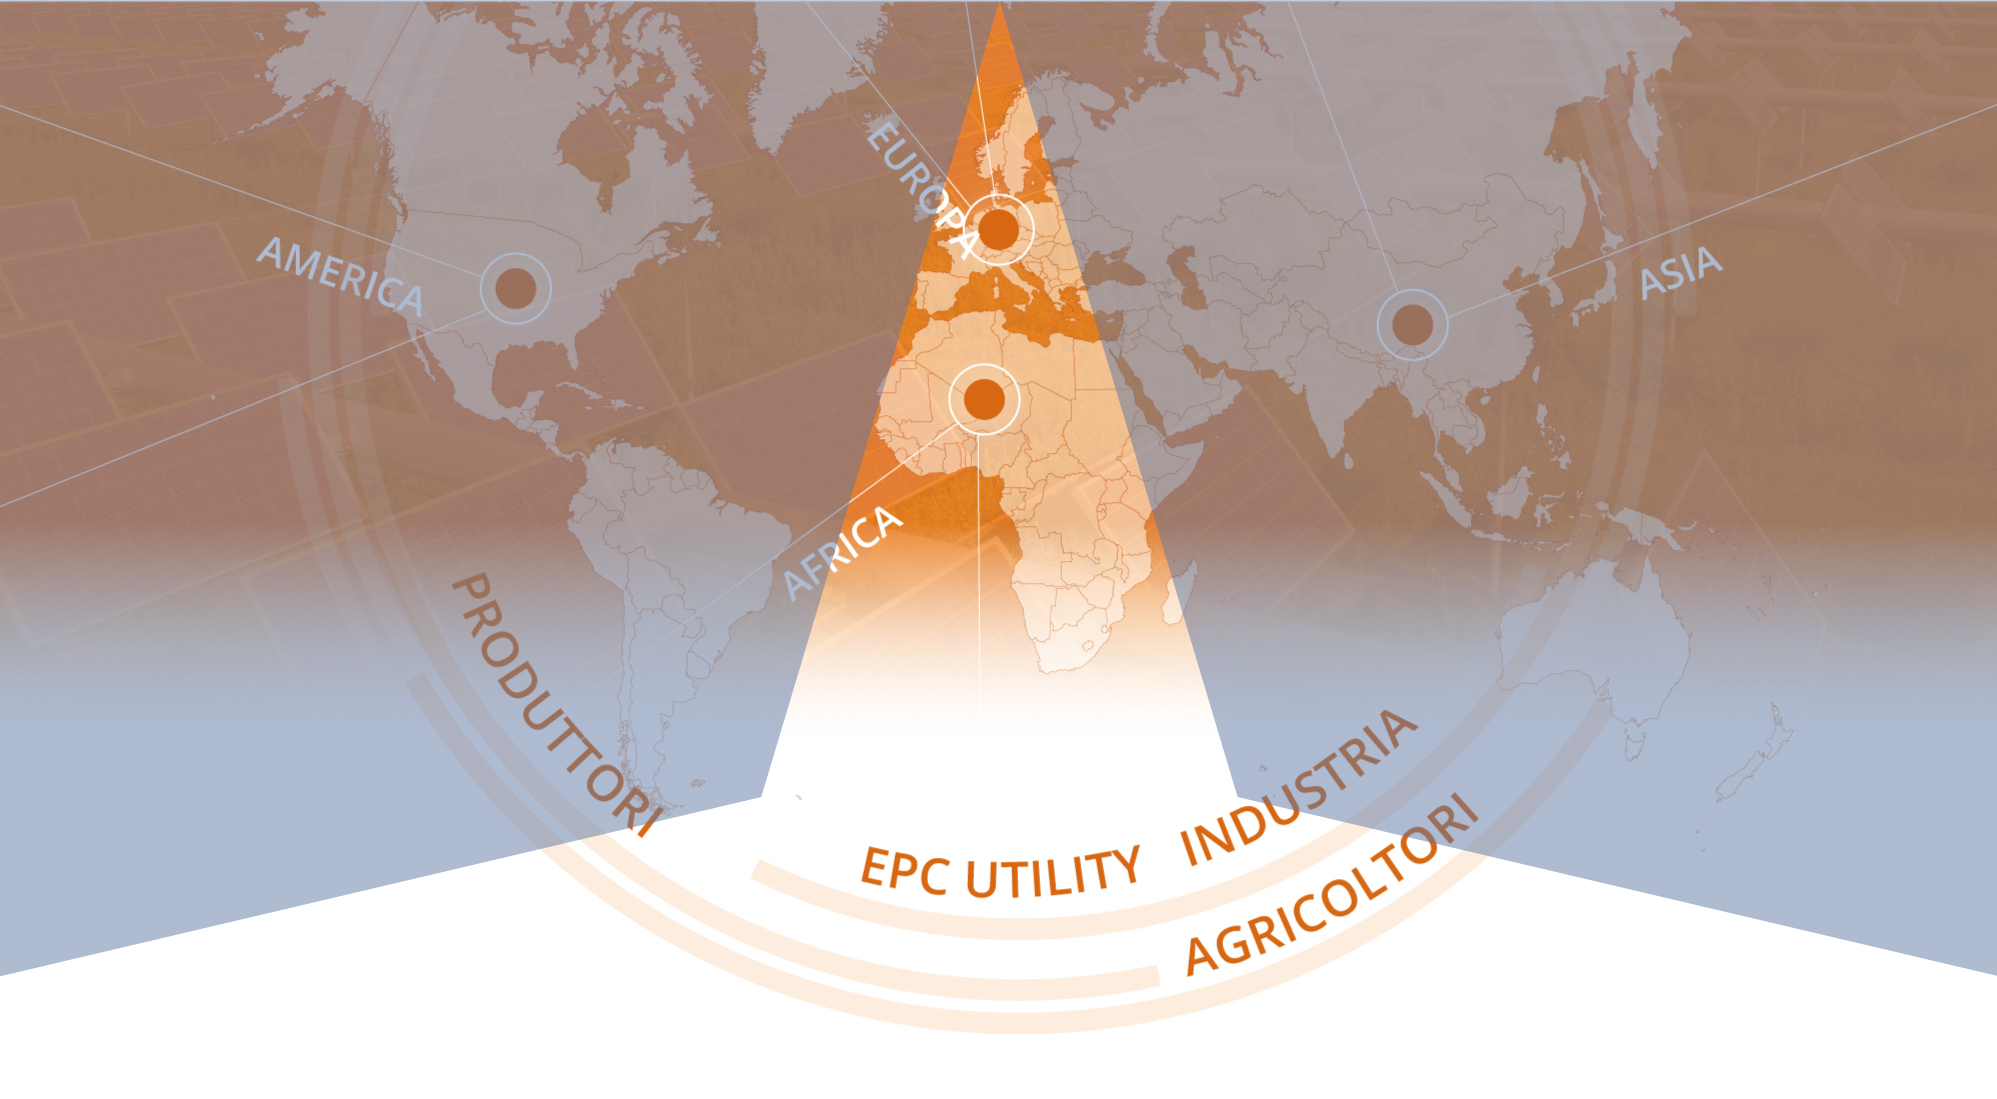 ecp utility industria